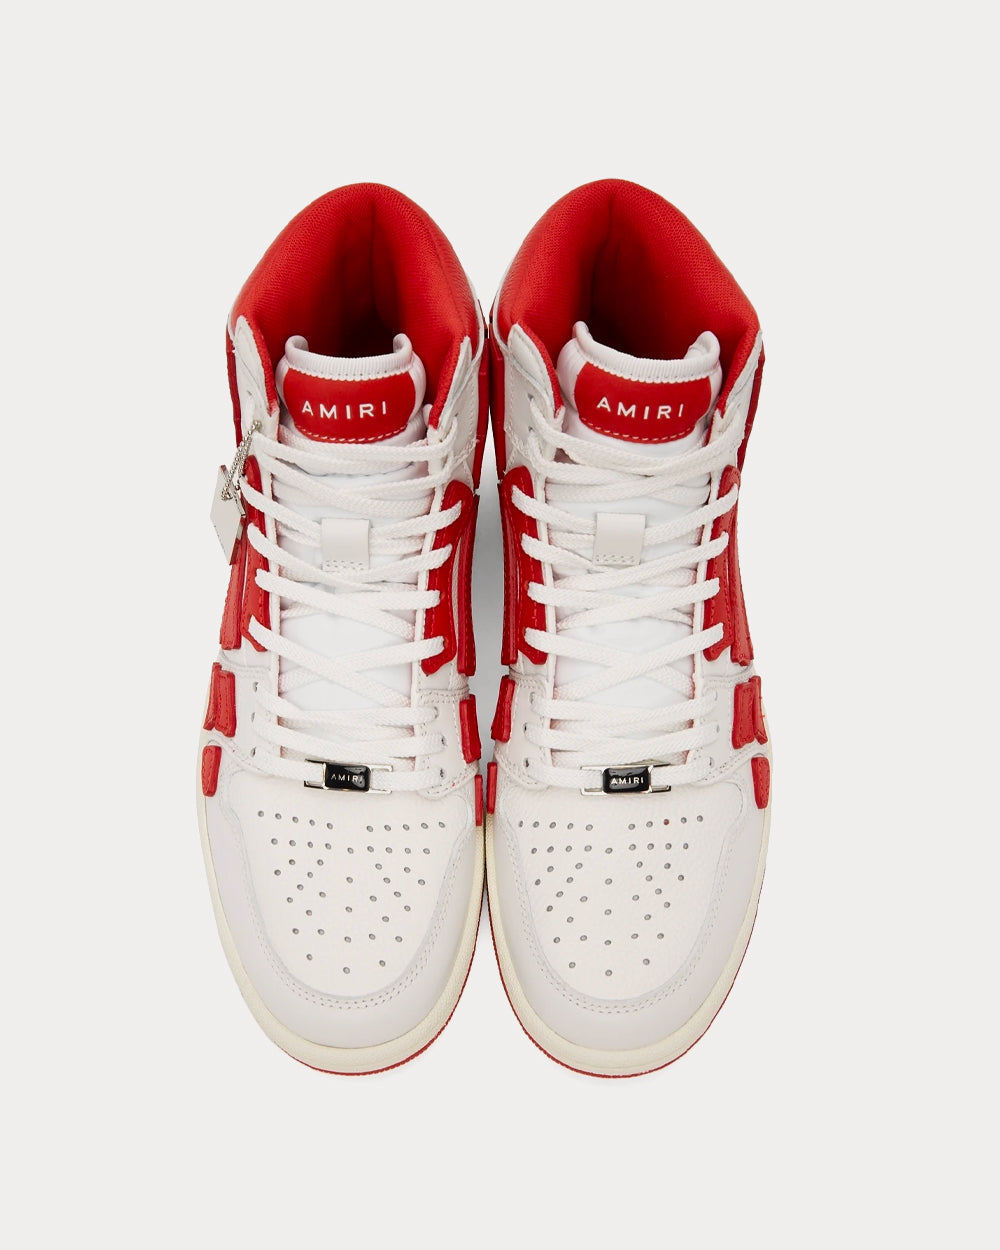 AMIRI - Skel Top White / Red High Top Sneakers